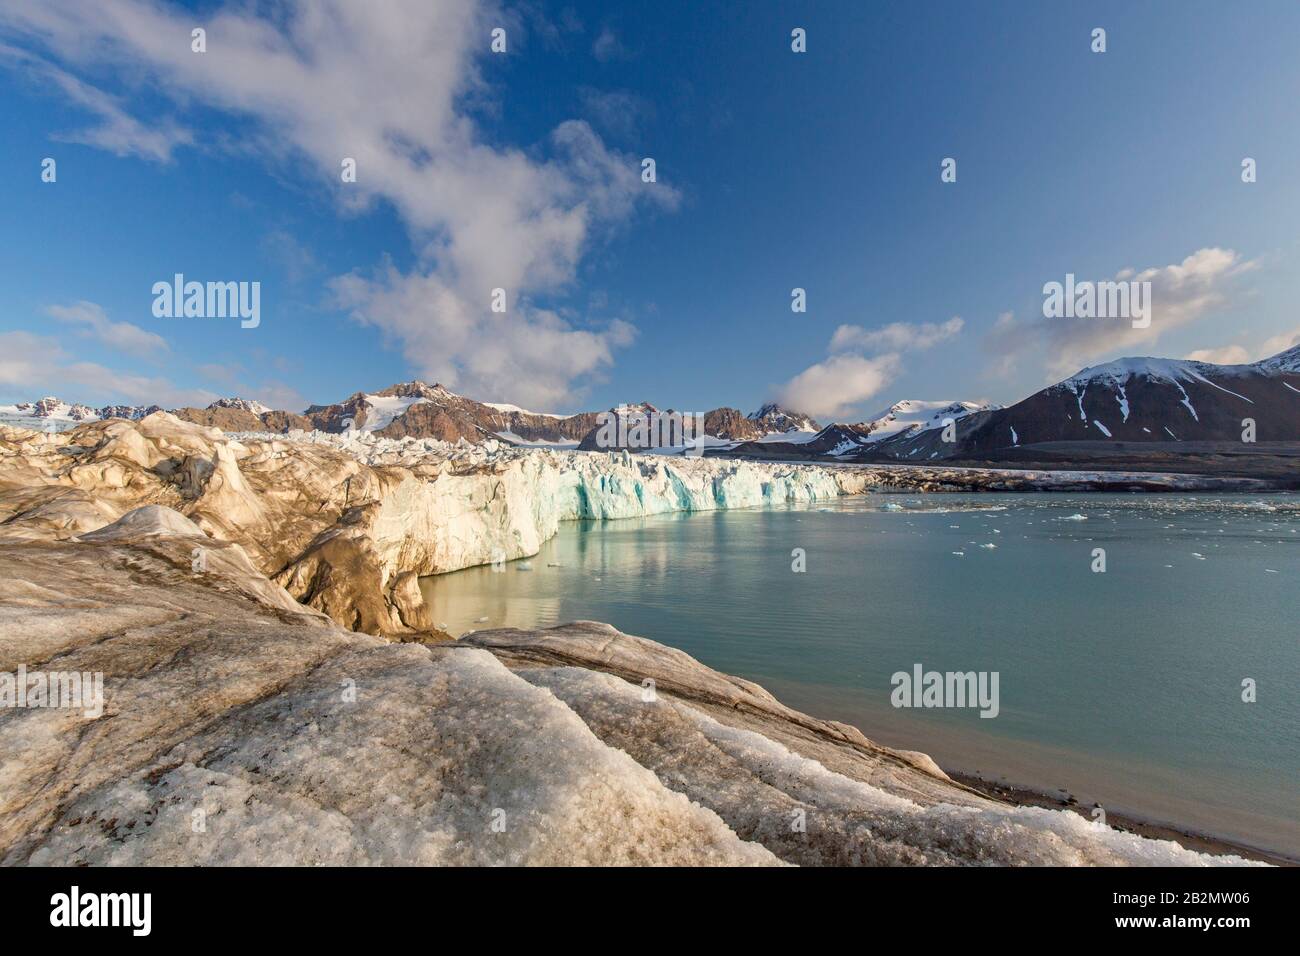 Fjortende Julibreen / 14 juillet le glacier s'apaise en Krossfjorden, Haakon VII Land, Spitsbergen / Svalbard, Norvège Banque D'Images